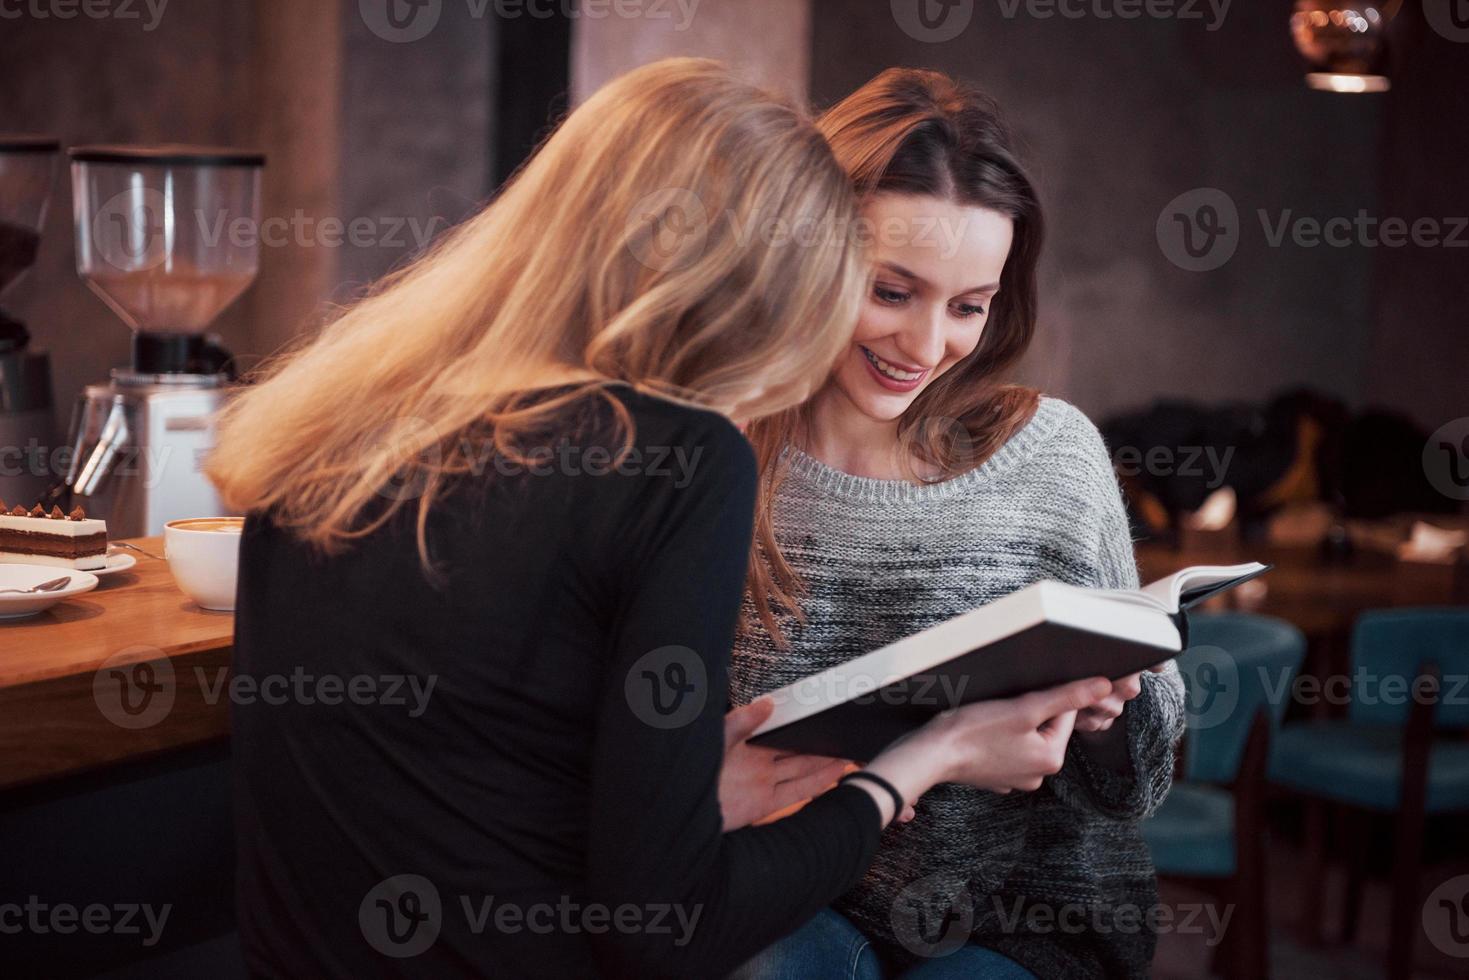 due ragazze assorte nella lettura di un libro durante la pausa al bar. carine e adorabili giovani donne stanno leggendo un libro e bevendo caffè foto